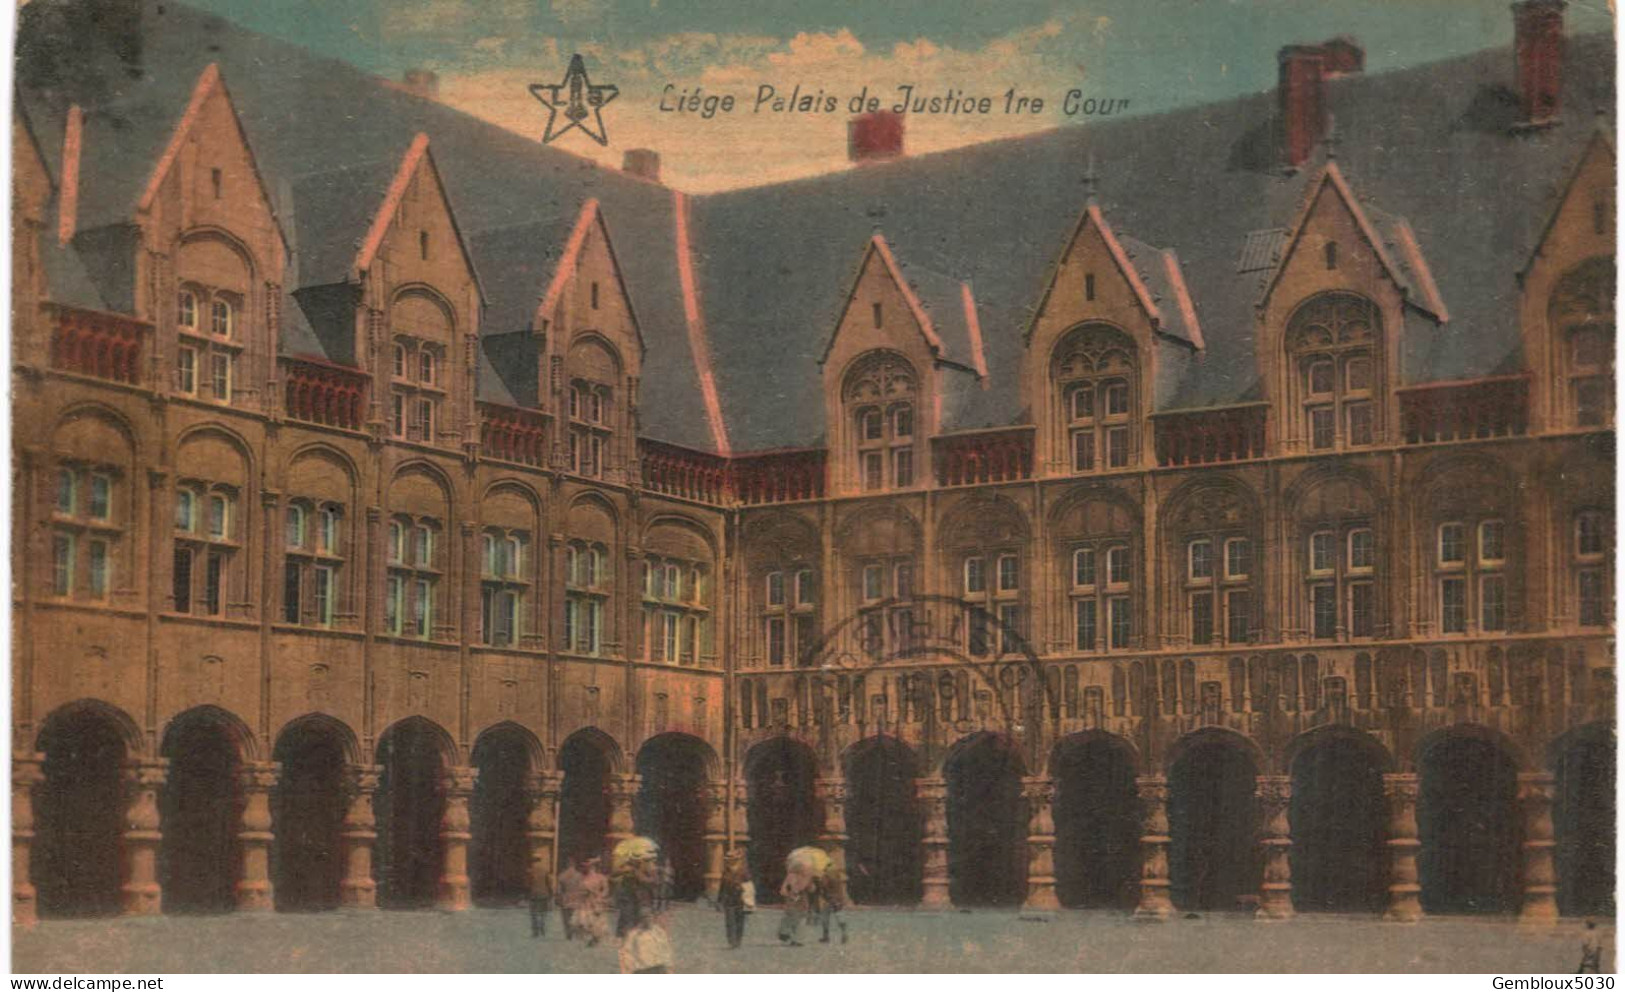 (01) Liège Ville lot de 10 cartes postales anciennes